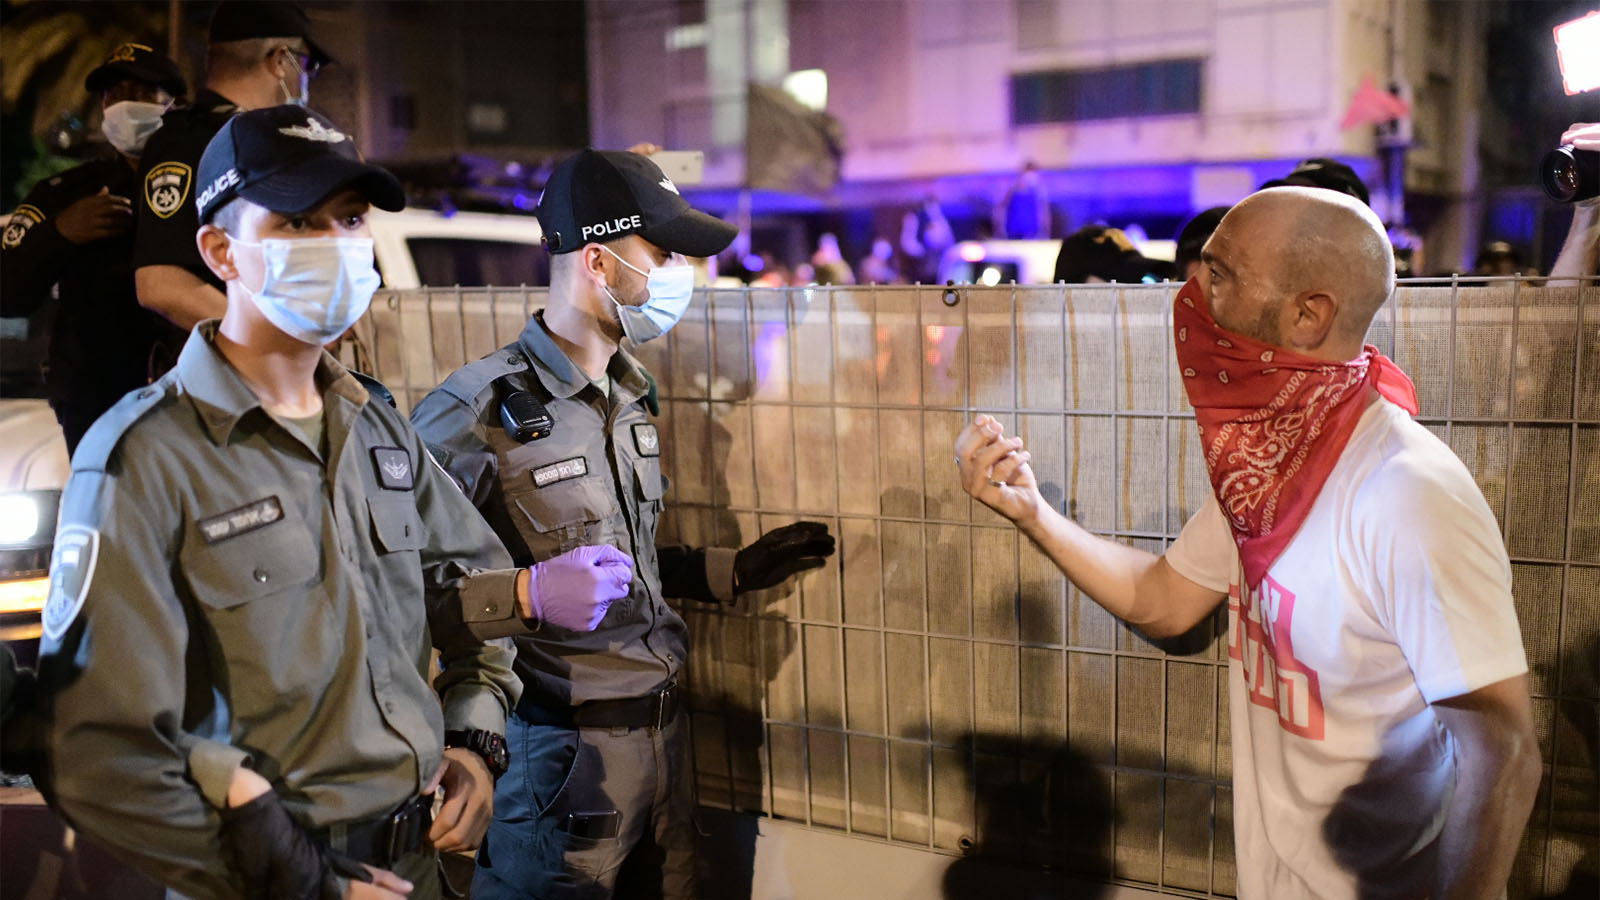 עימותים בין מפגינים לשוטרים בהפגנות מחאה נגד ראש הממשלה בנימין נתניהו, כיכר הבימה בתל אביב, 10 באוקטובר 2020 (צילום: תומר נויברג, פלאש 90)